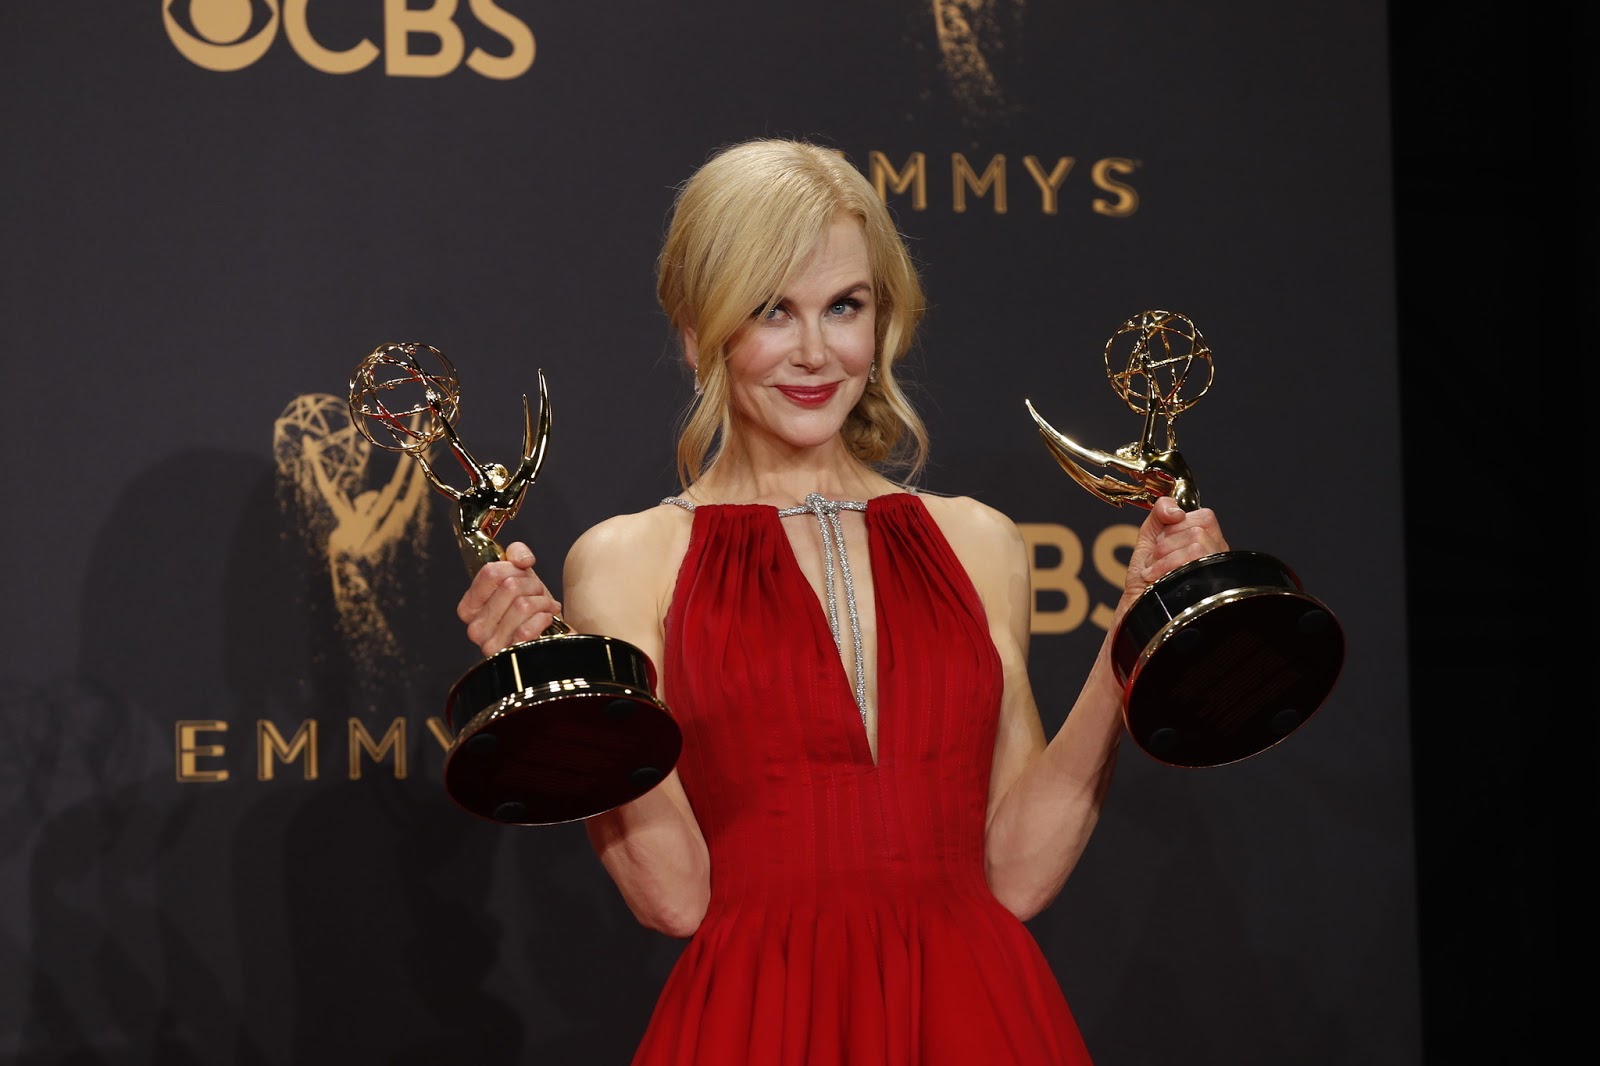 HBO recebe 29 prêmios no Emmy 2017! - O que tem na nossa estante1600 x 1066